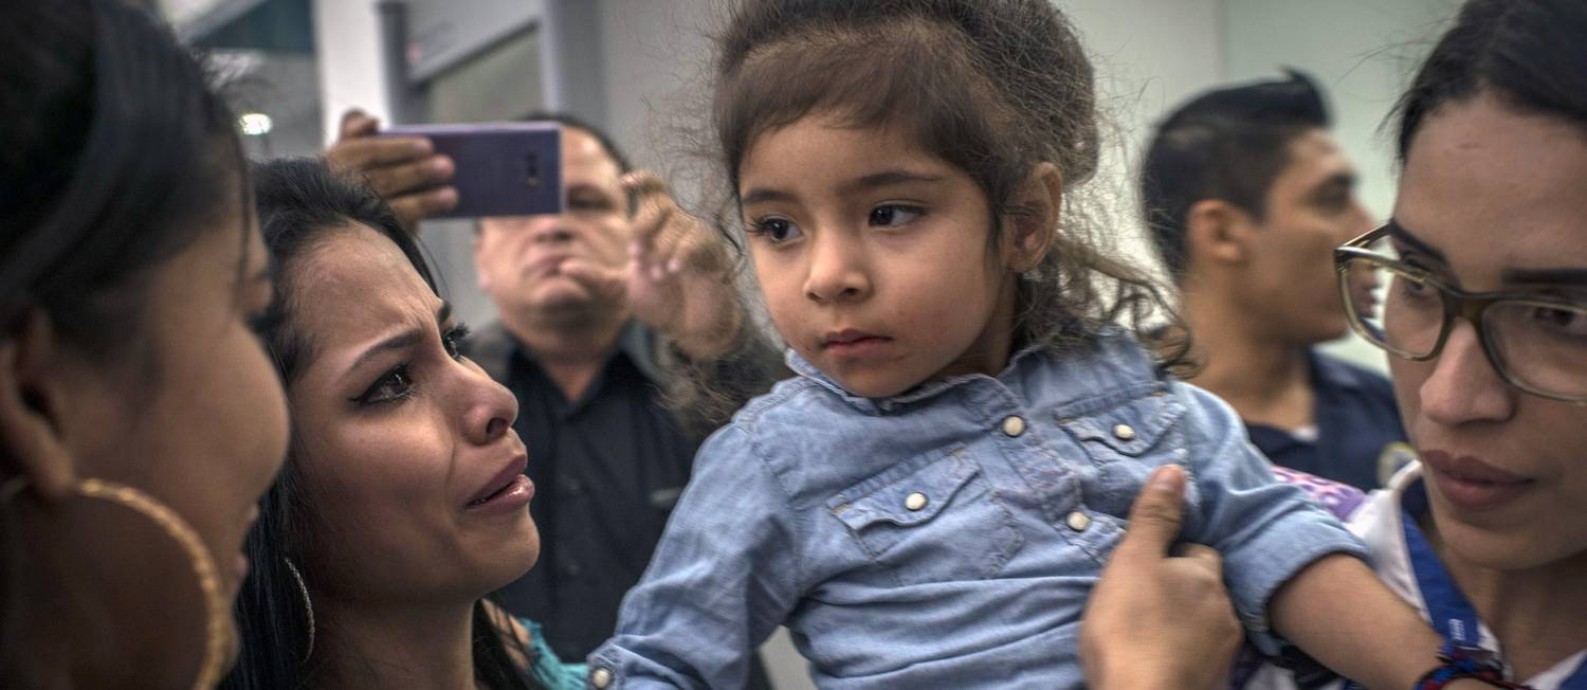 Fernanda Jacqueline Davila,de 2 anos, é recebida pela sua família em Honduras após meses sozinha nos EUA Foto: DANIELE VOLPE / NYT